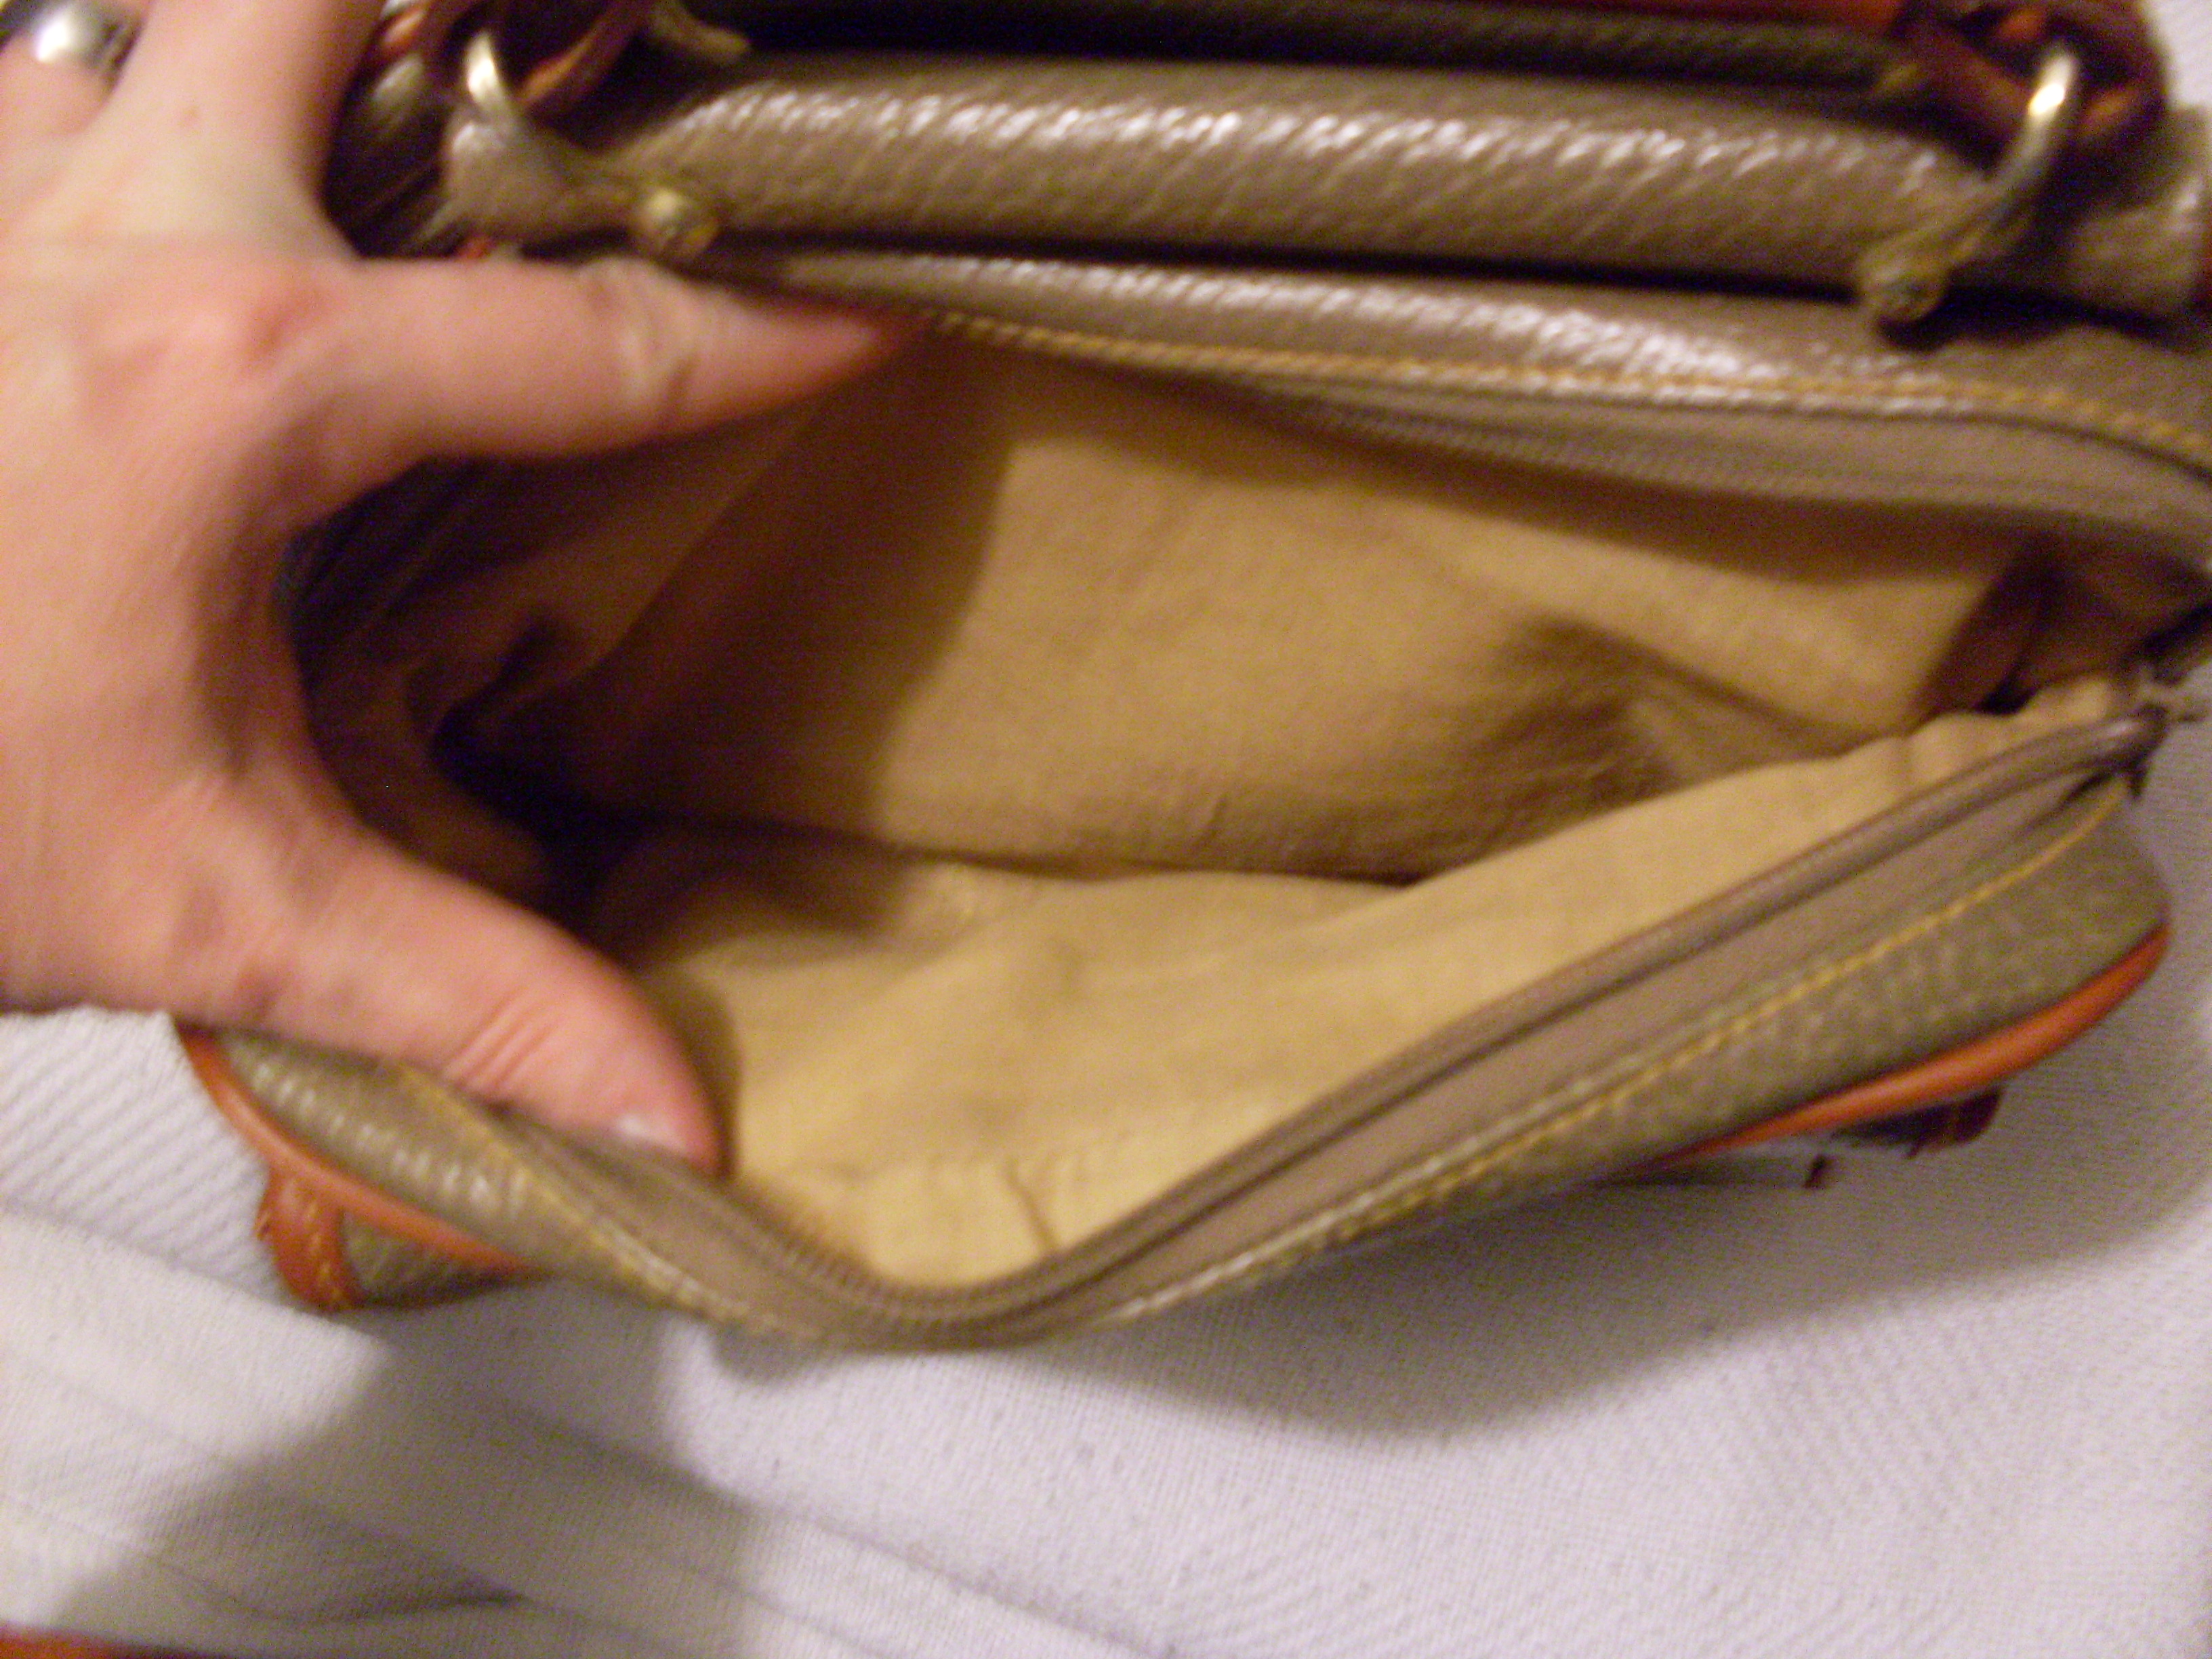 I Bought A Fake Vintage Dooney & Bourke Bag - Accidental Reseller Purchase  